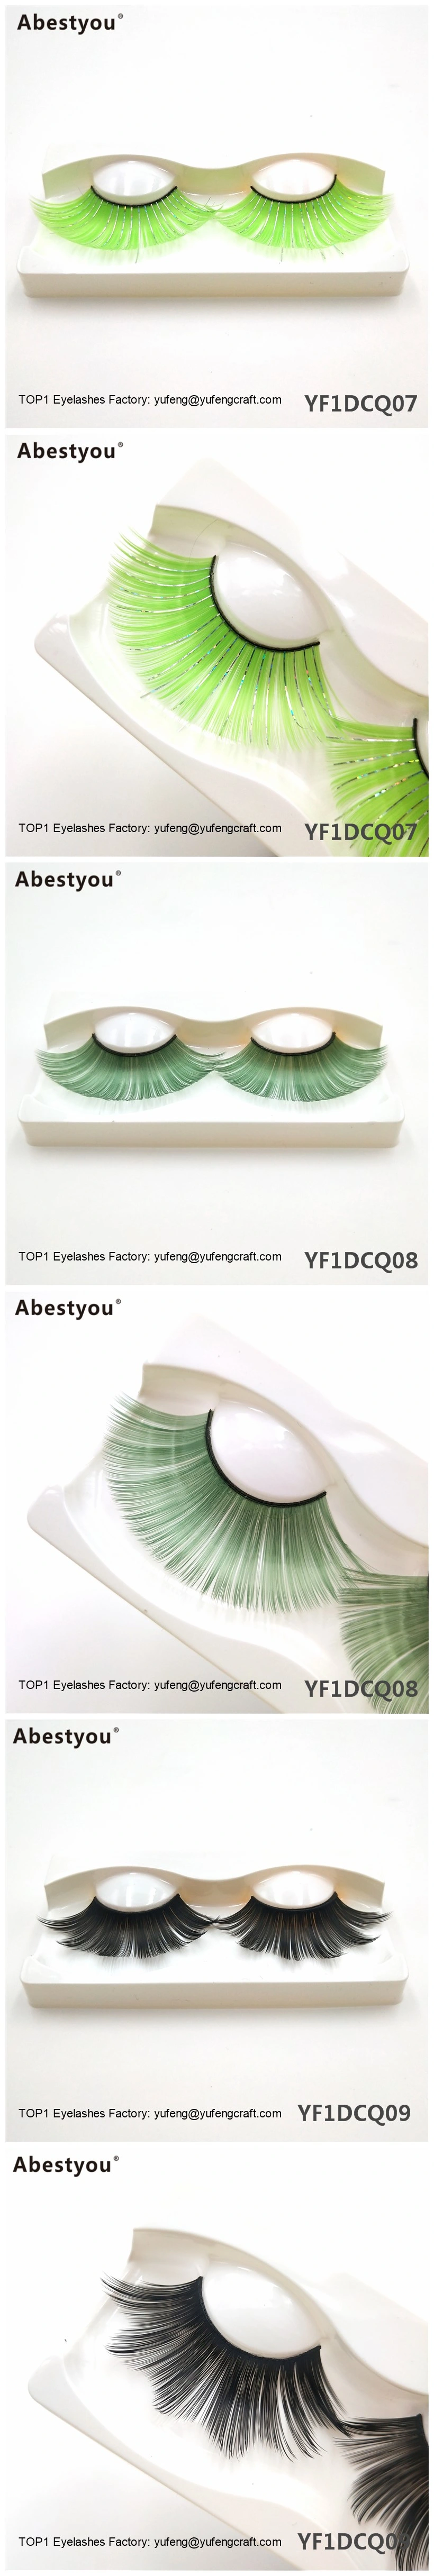 Abestyou New Wholesalehand Made 3D Colorful Eyelashes